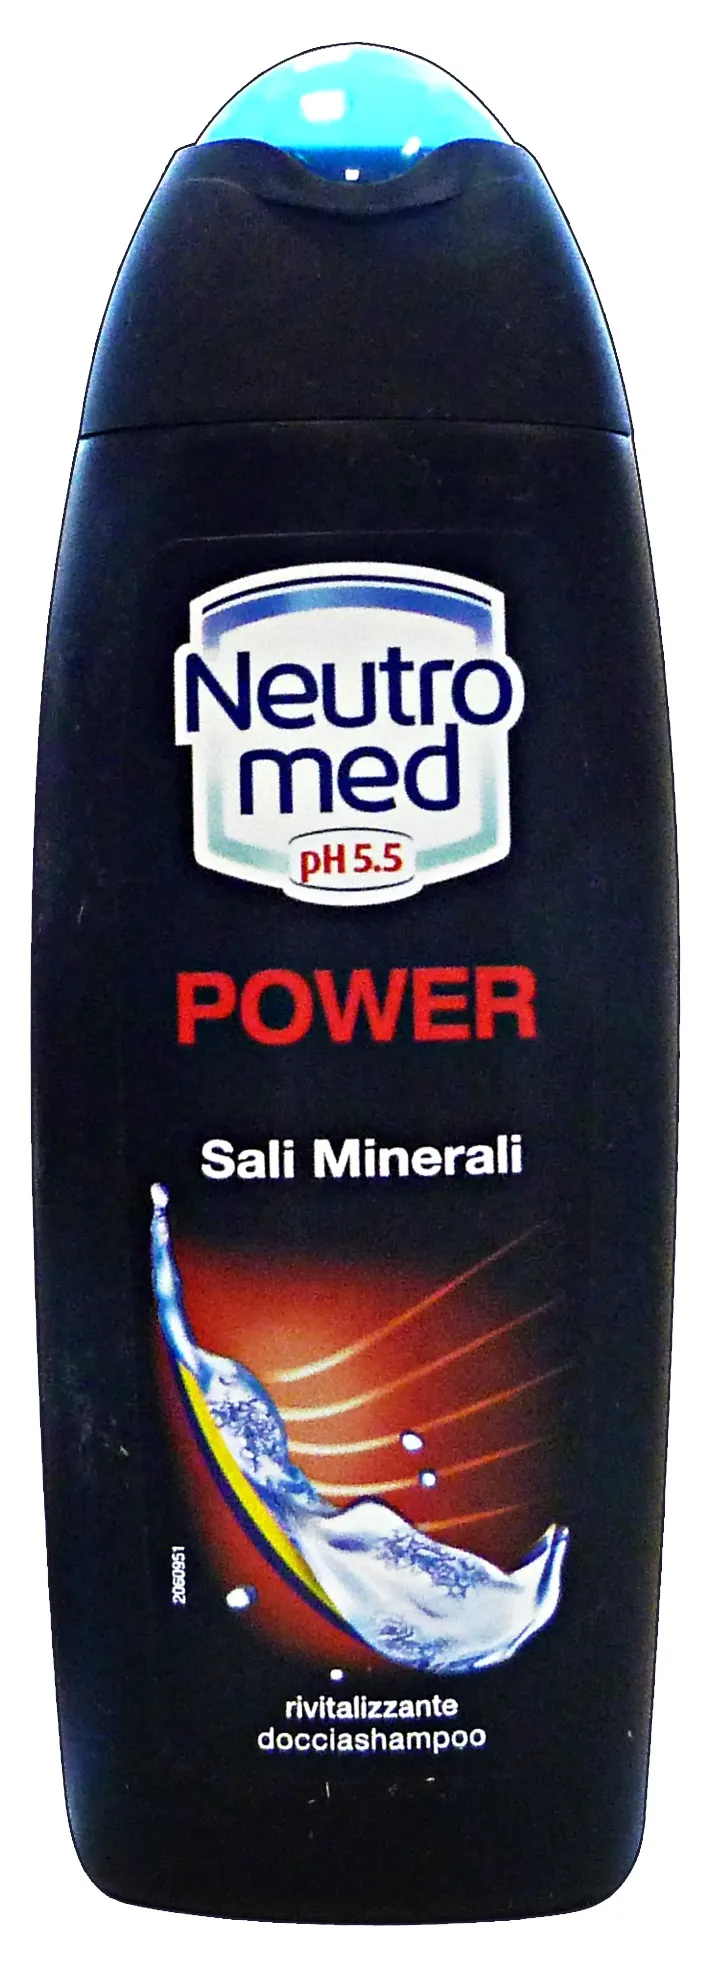 "NEUTROMED Doccia power sali minerali 250 ml. - doccia schiuma"